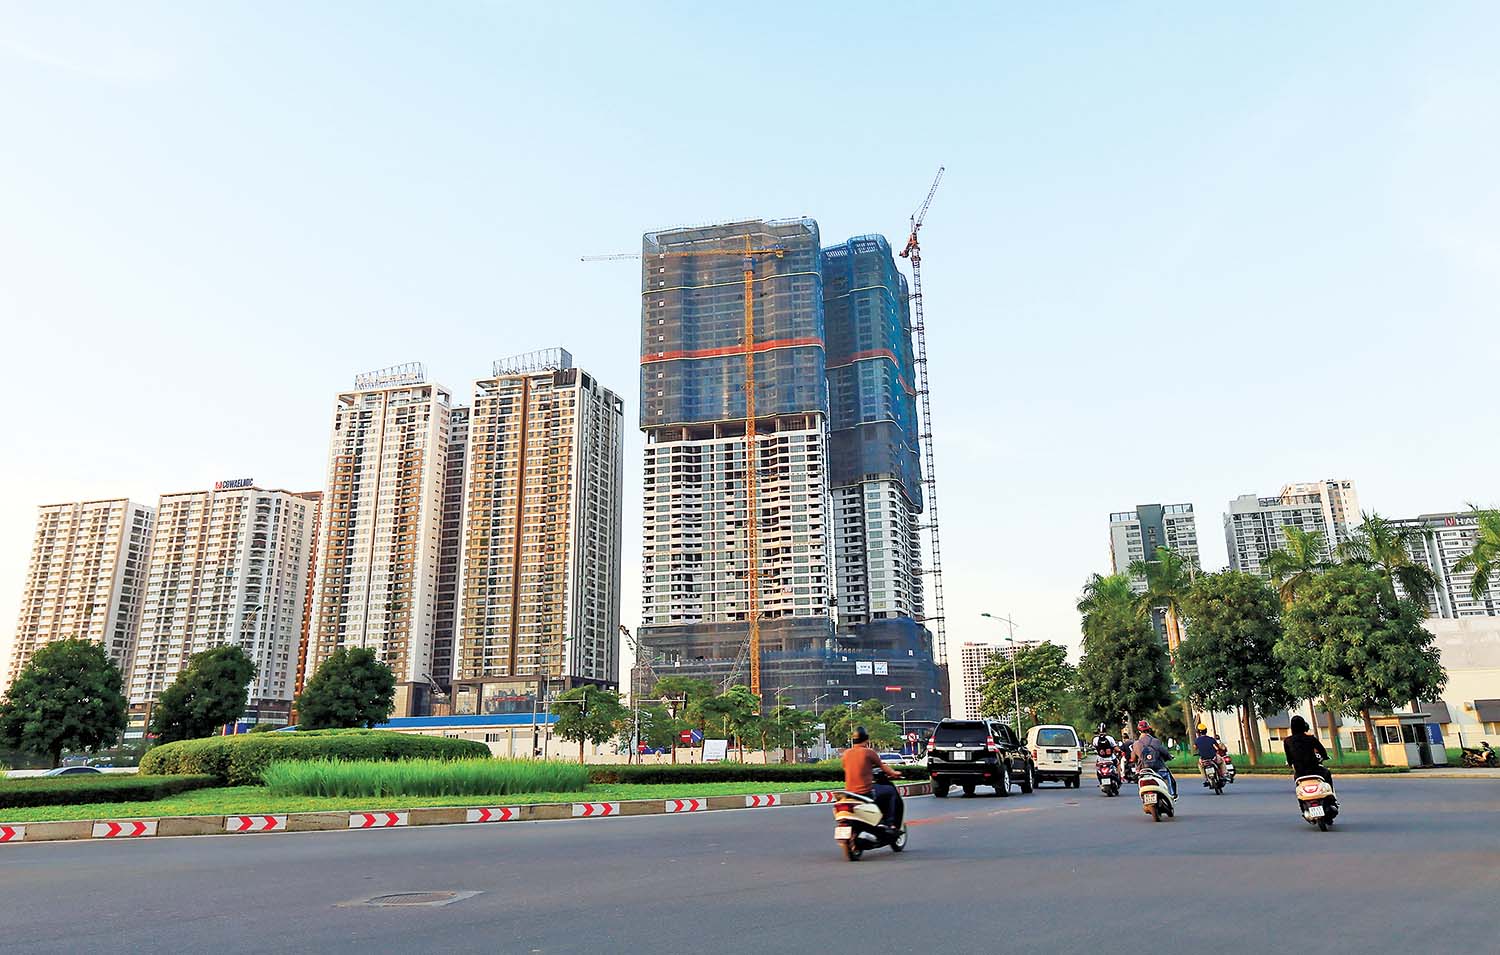 Dù thị trường bất động sản Việt Nam đang gặp khó khăn, nhưng các nhà đầu tư nước ngoài vẫn nhận định còn nhiều dư địa phát triển 	Ảnh: Đức thanh